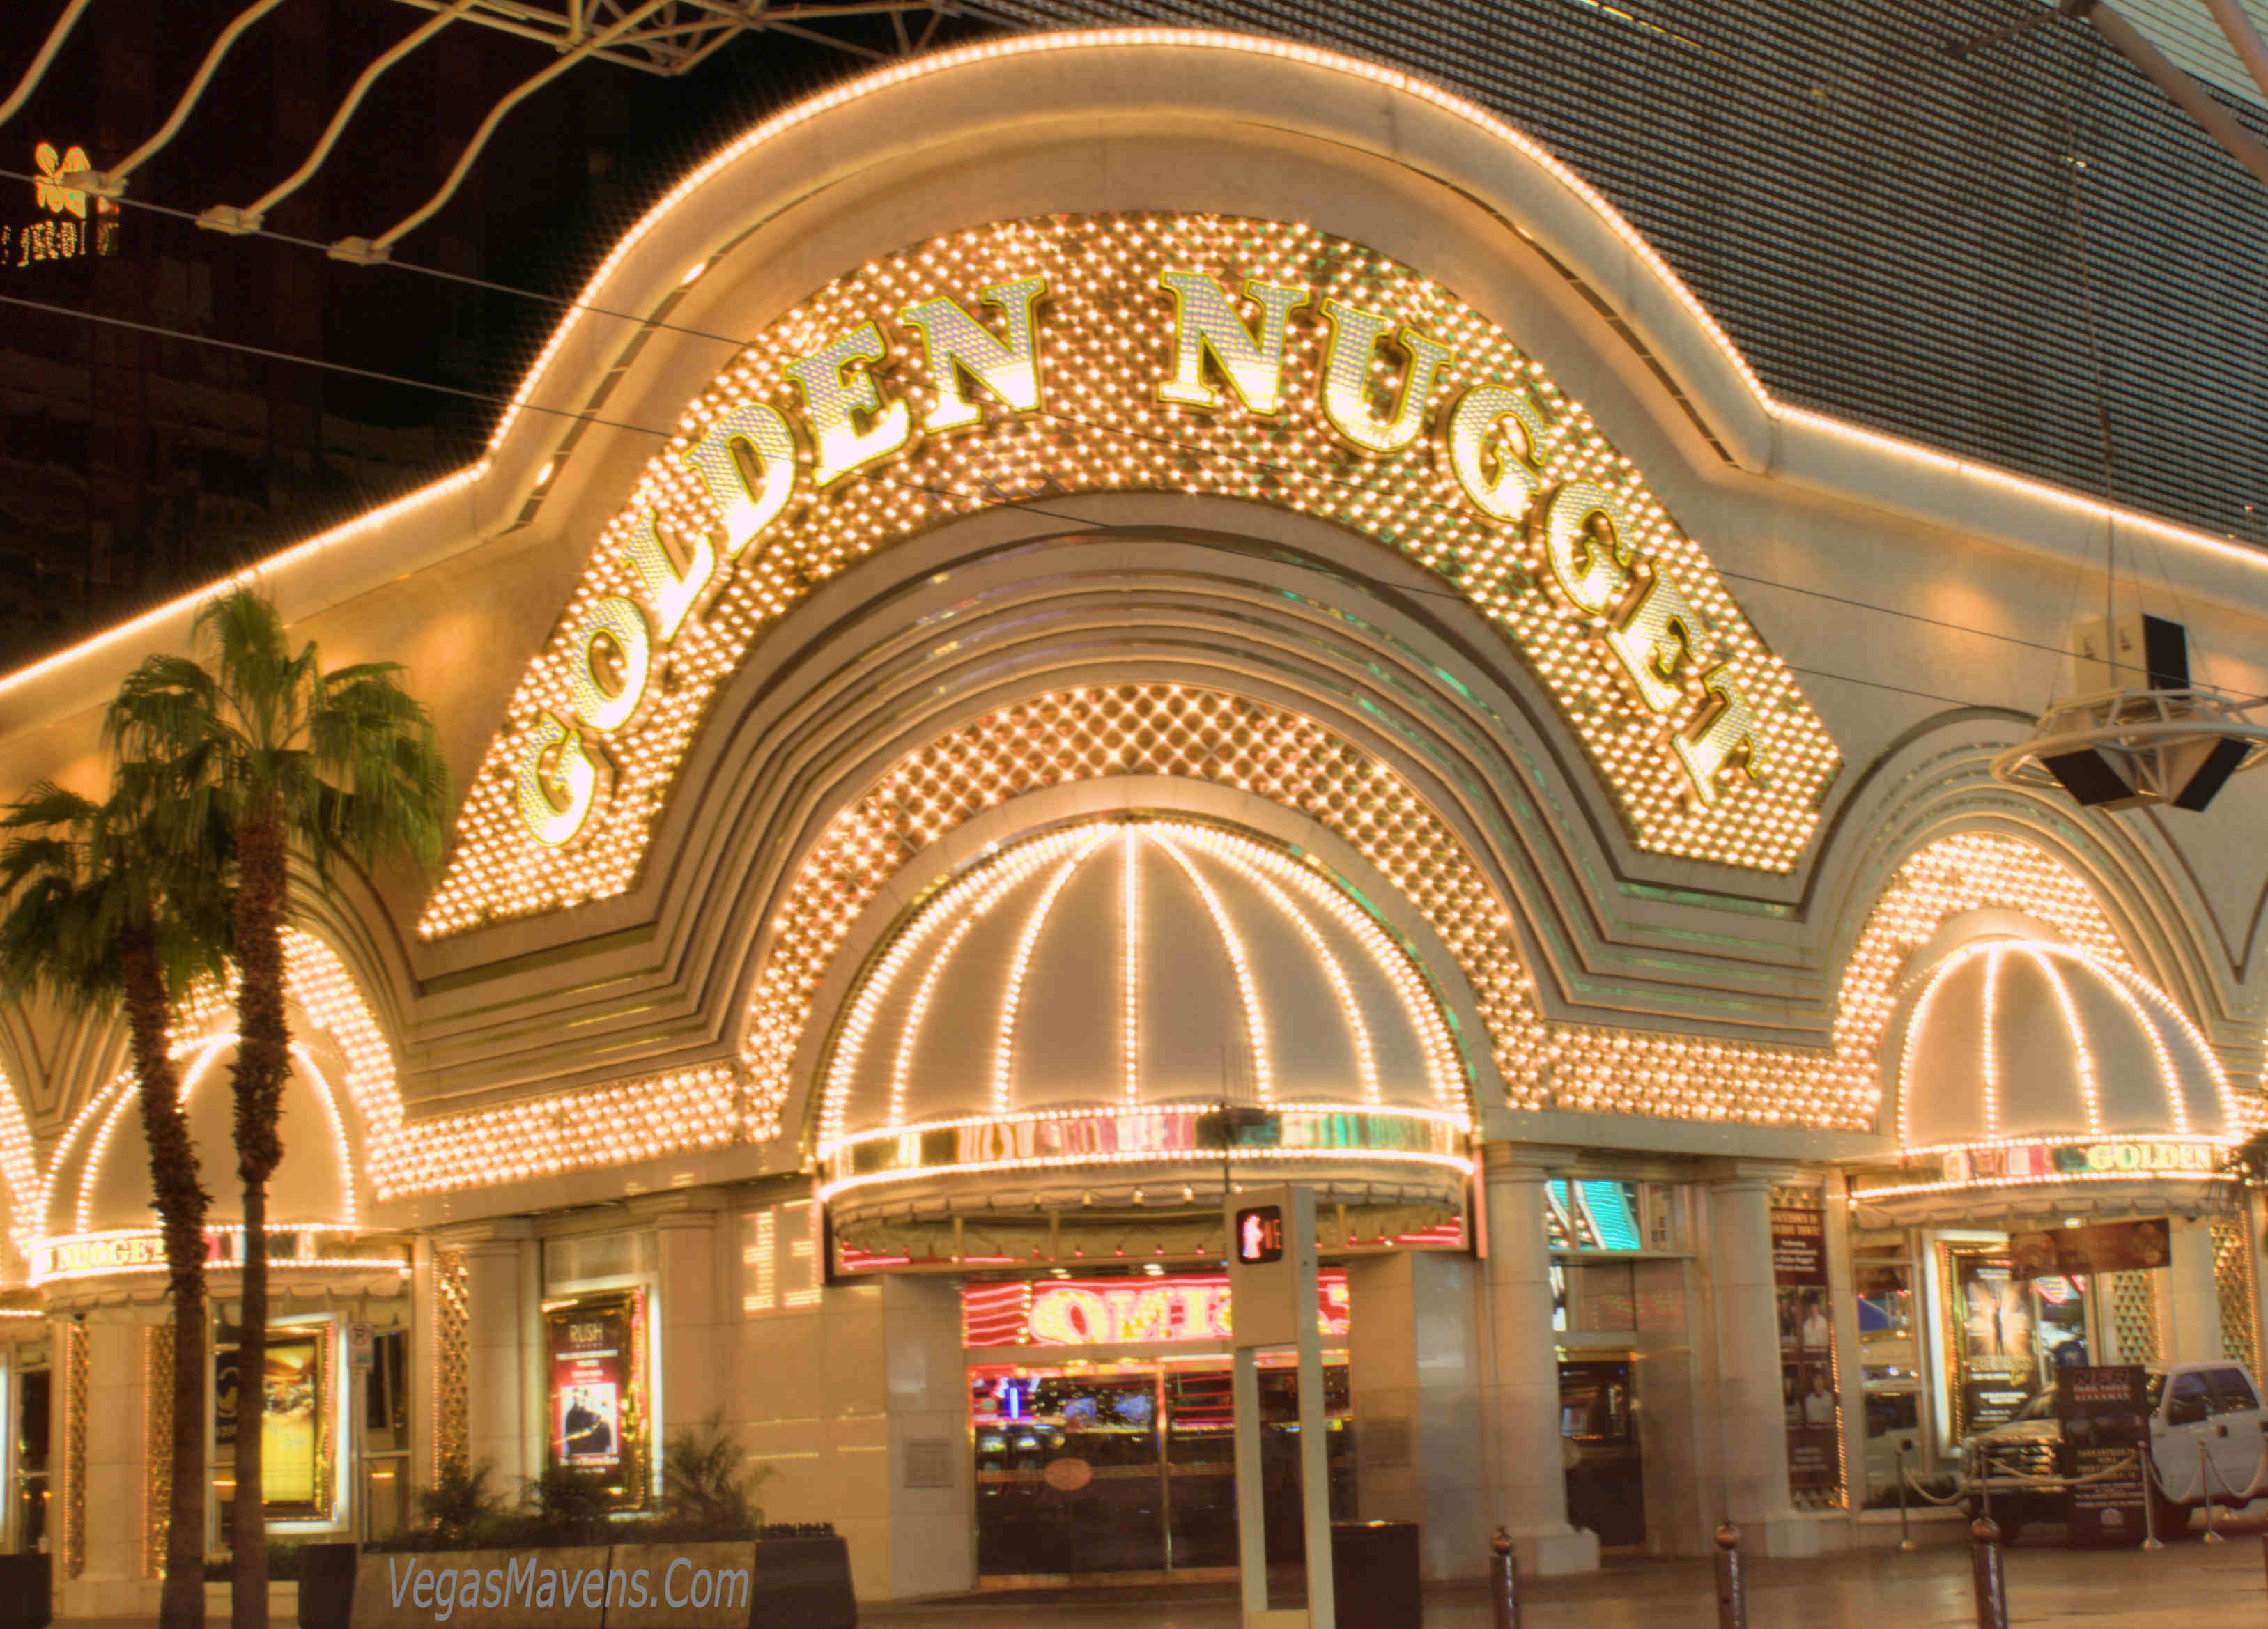 golden nugget casino online nj